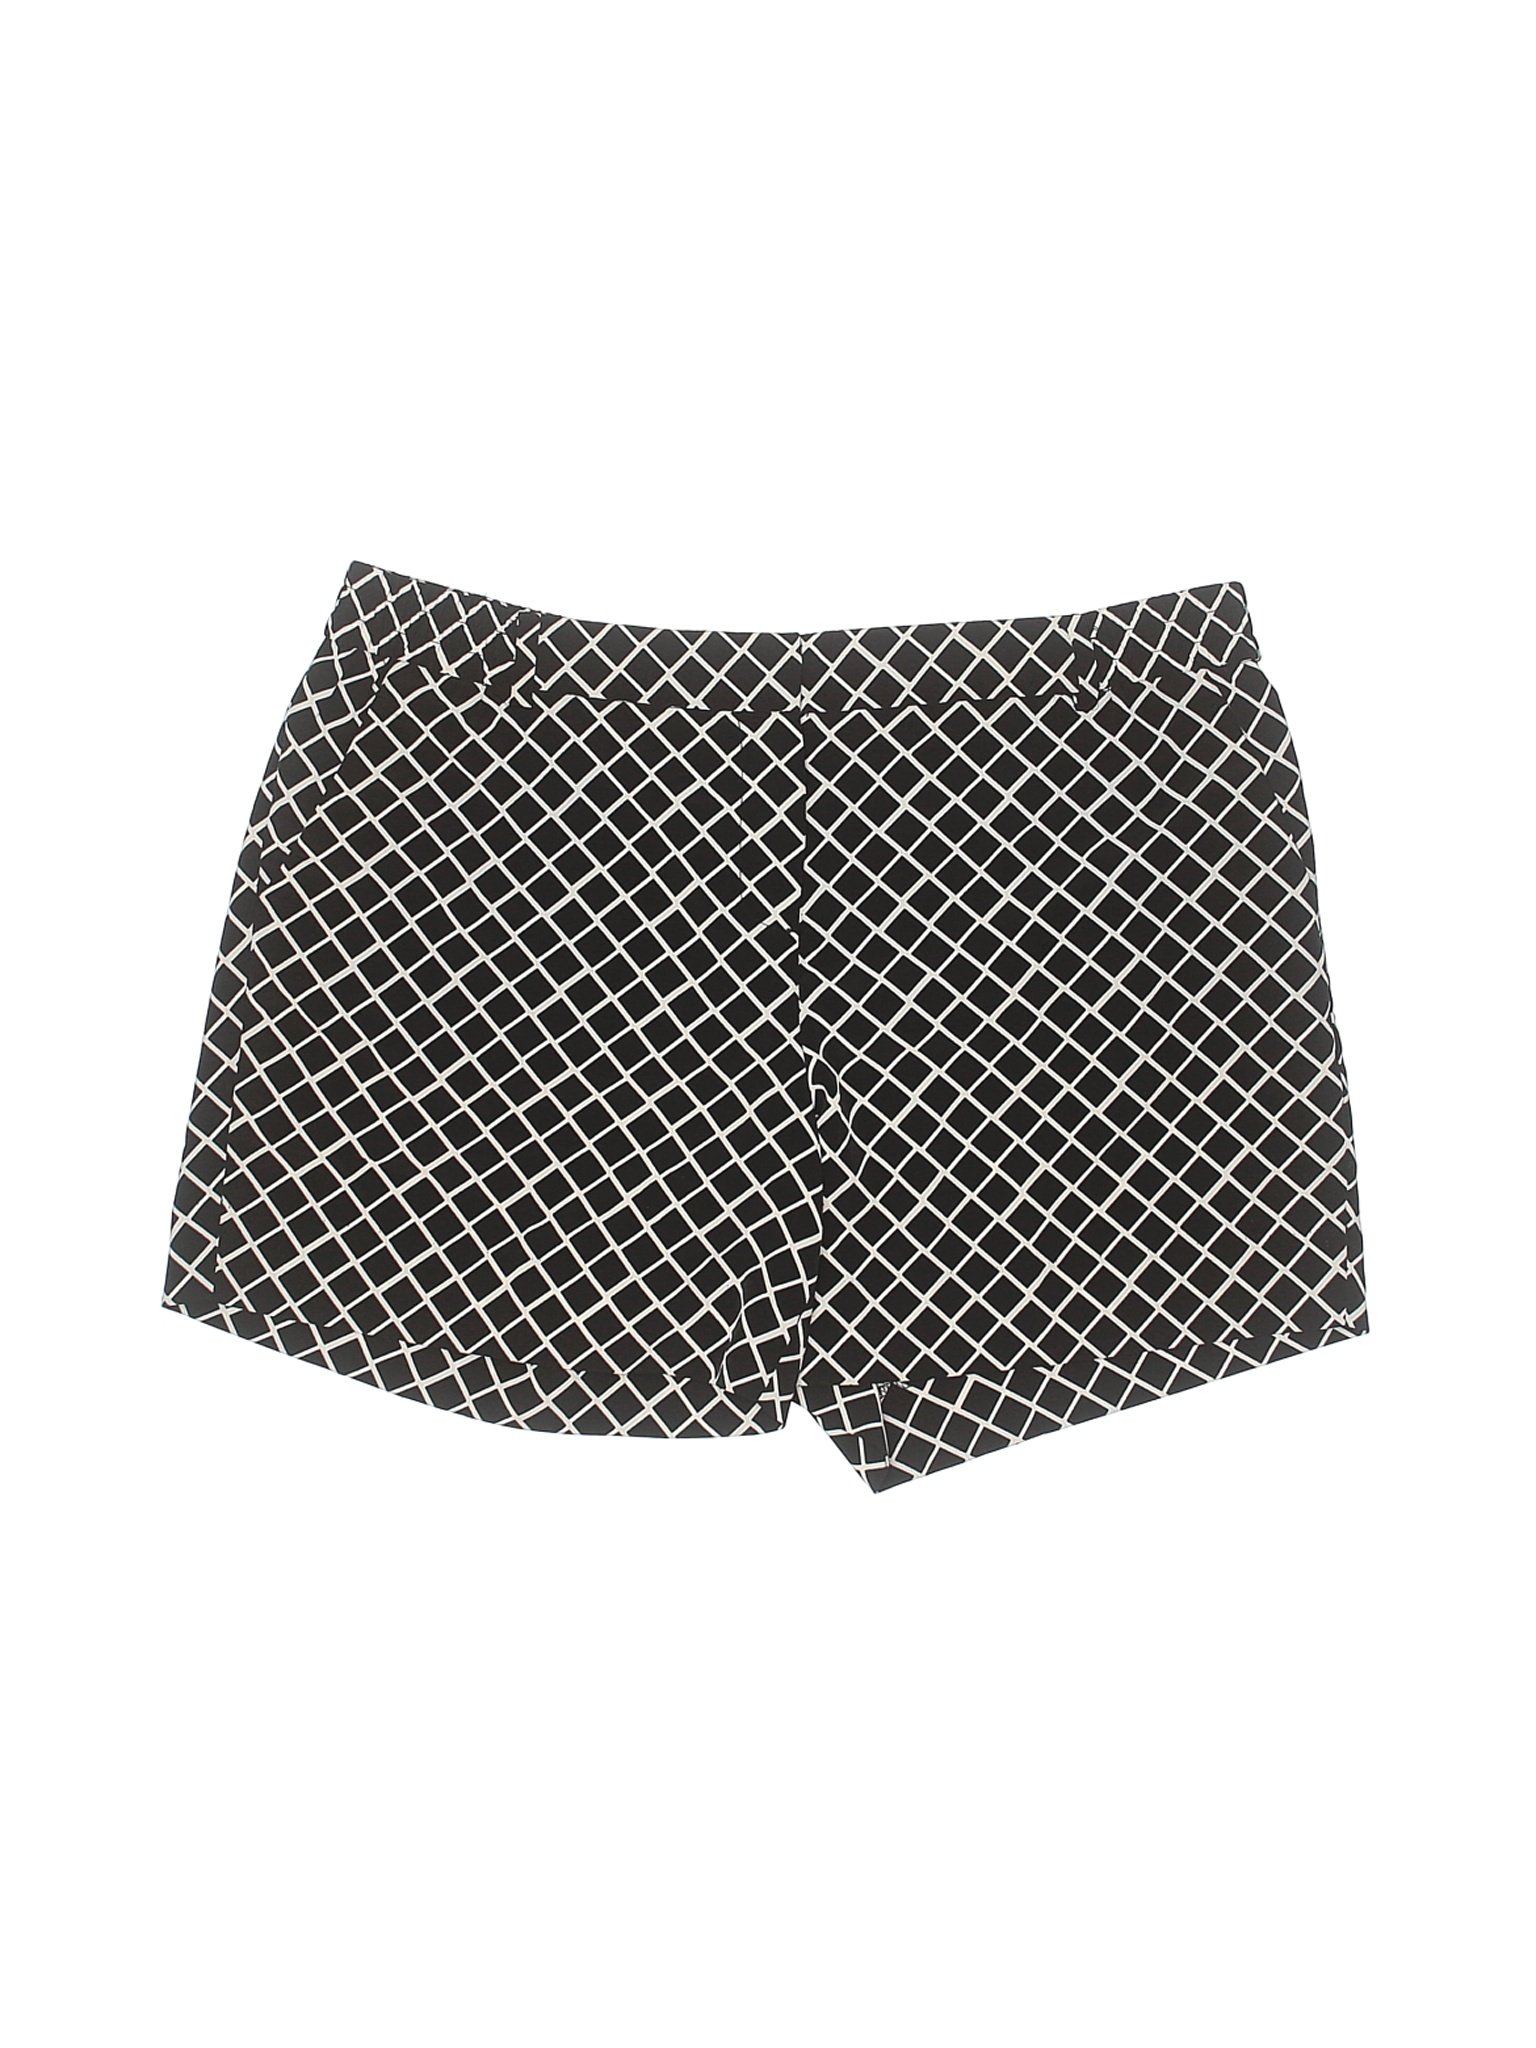 The Limited Women Black Dressy Shorts 10 | eBay